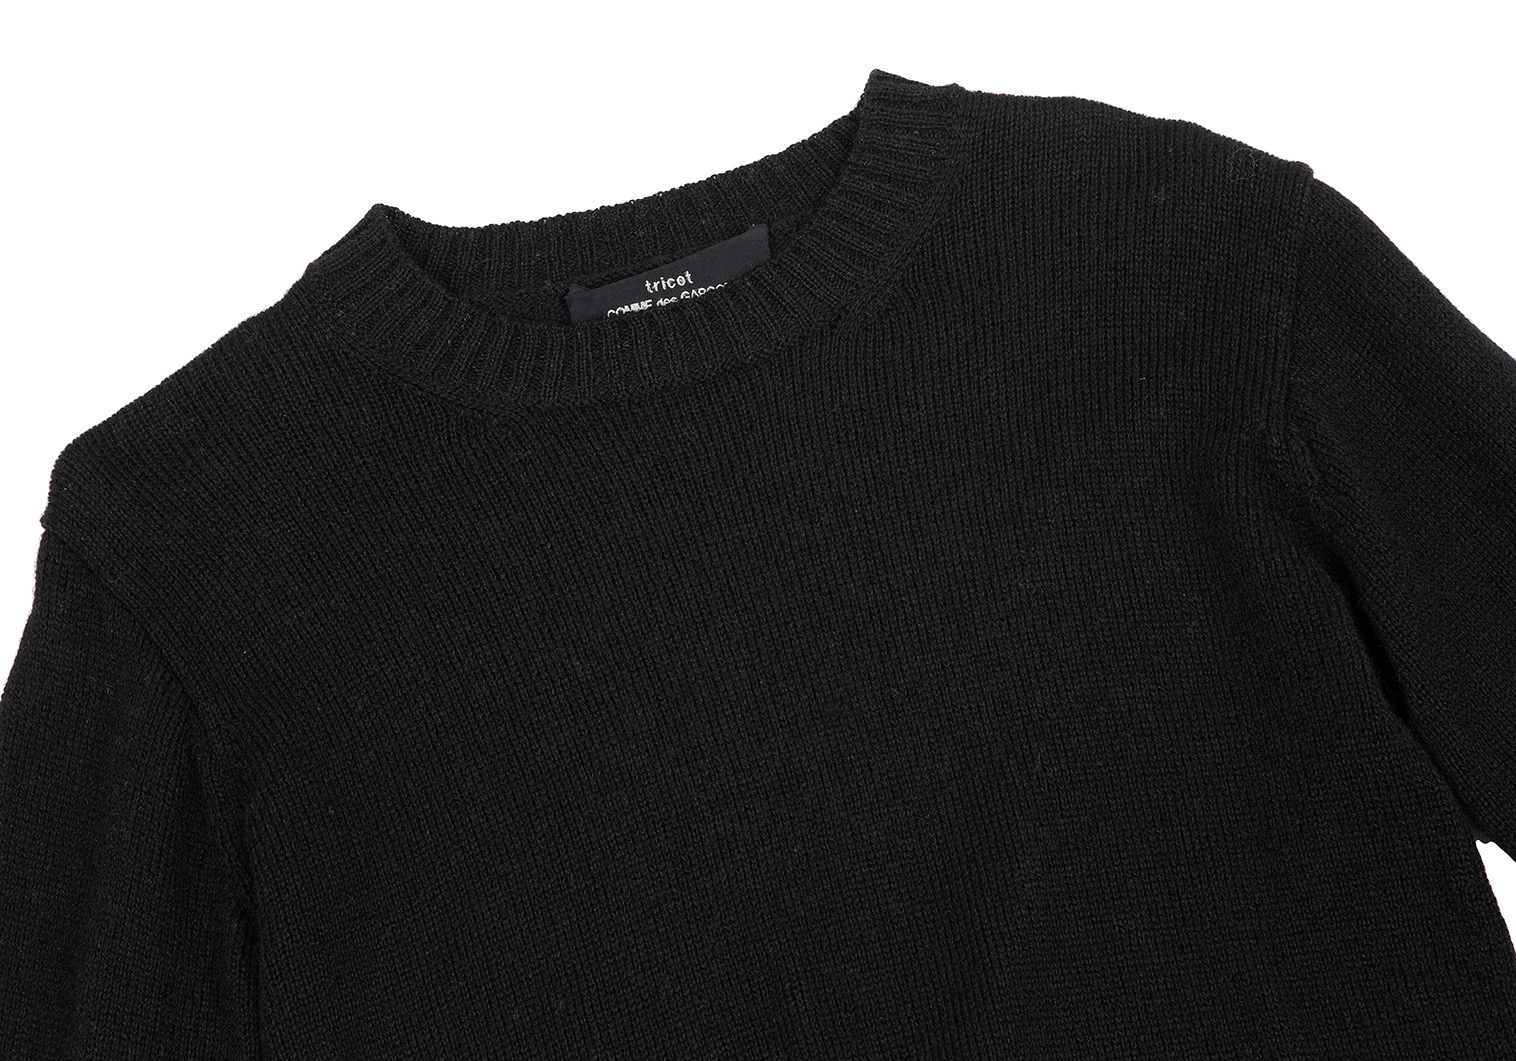 トリコ コムデギャルソンtricot COMME des GARCONS ウールナイロン裾編み替えニットセーター 黒M位